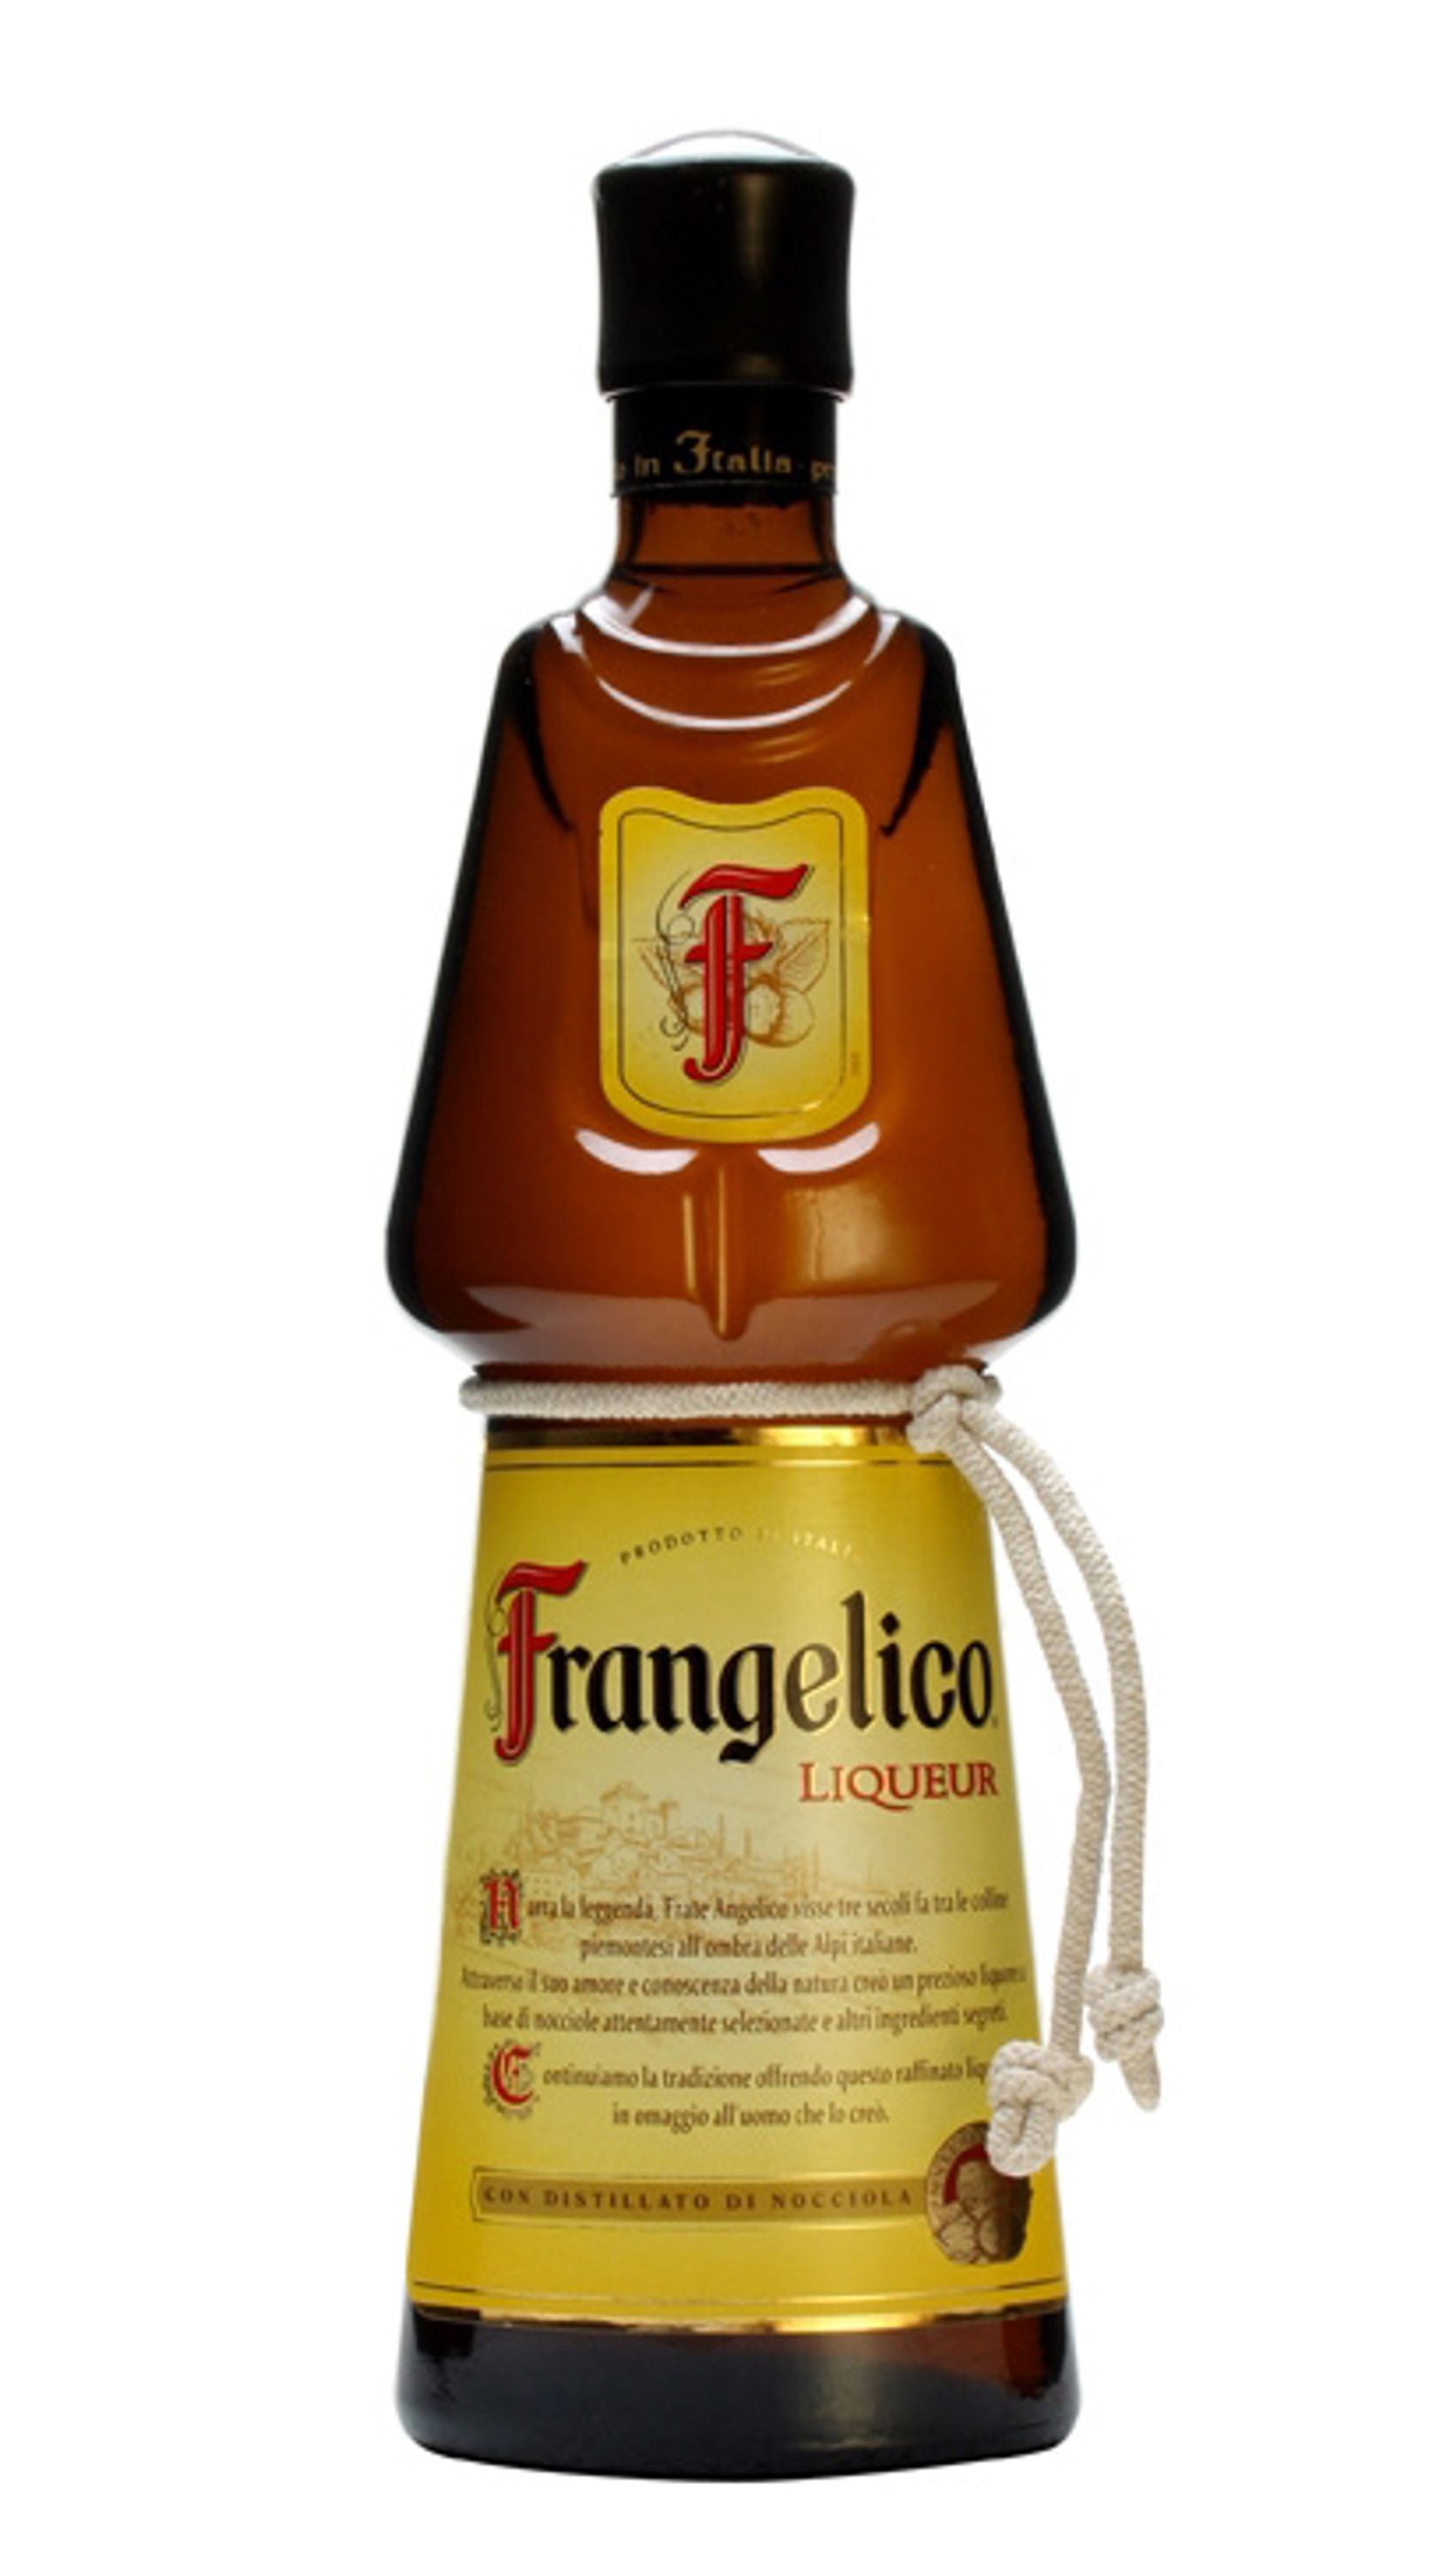 Frangelico Liqueur 0.7l, alc. 20% by volume, hazelnut liqueur Italy